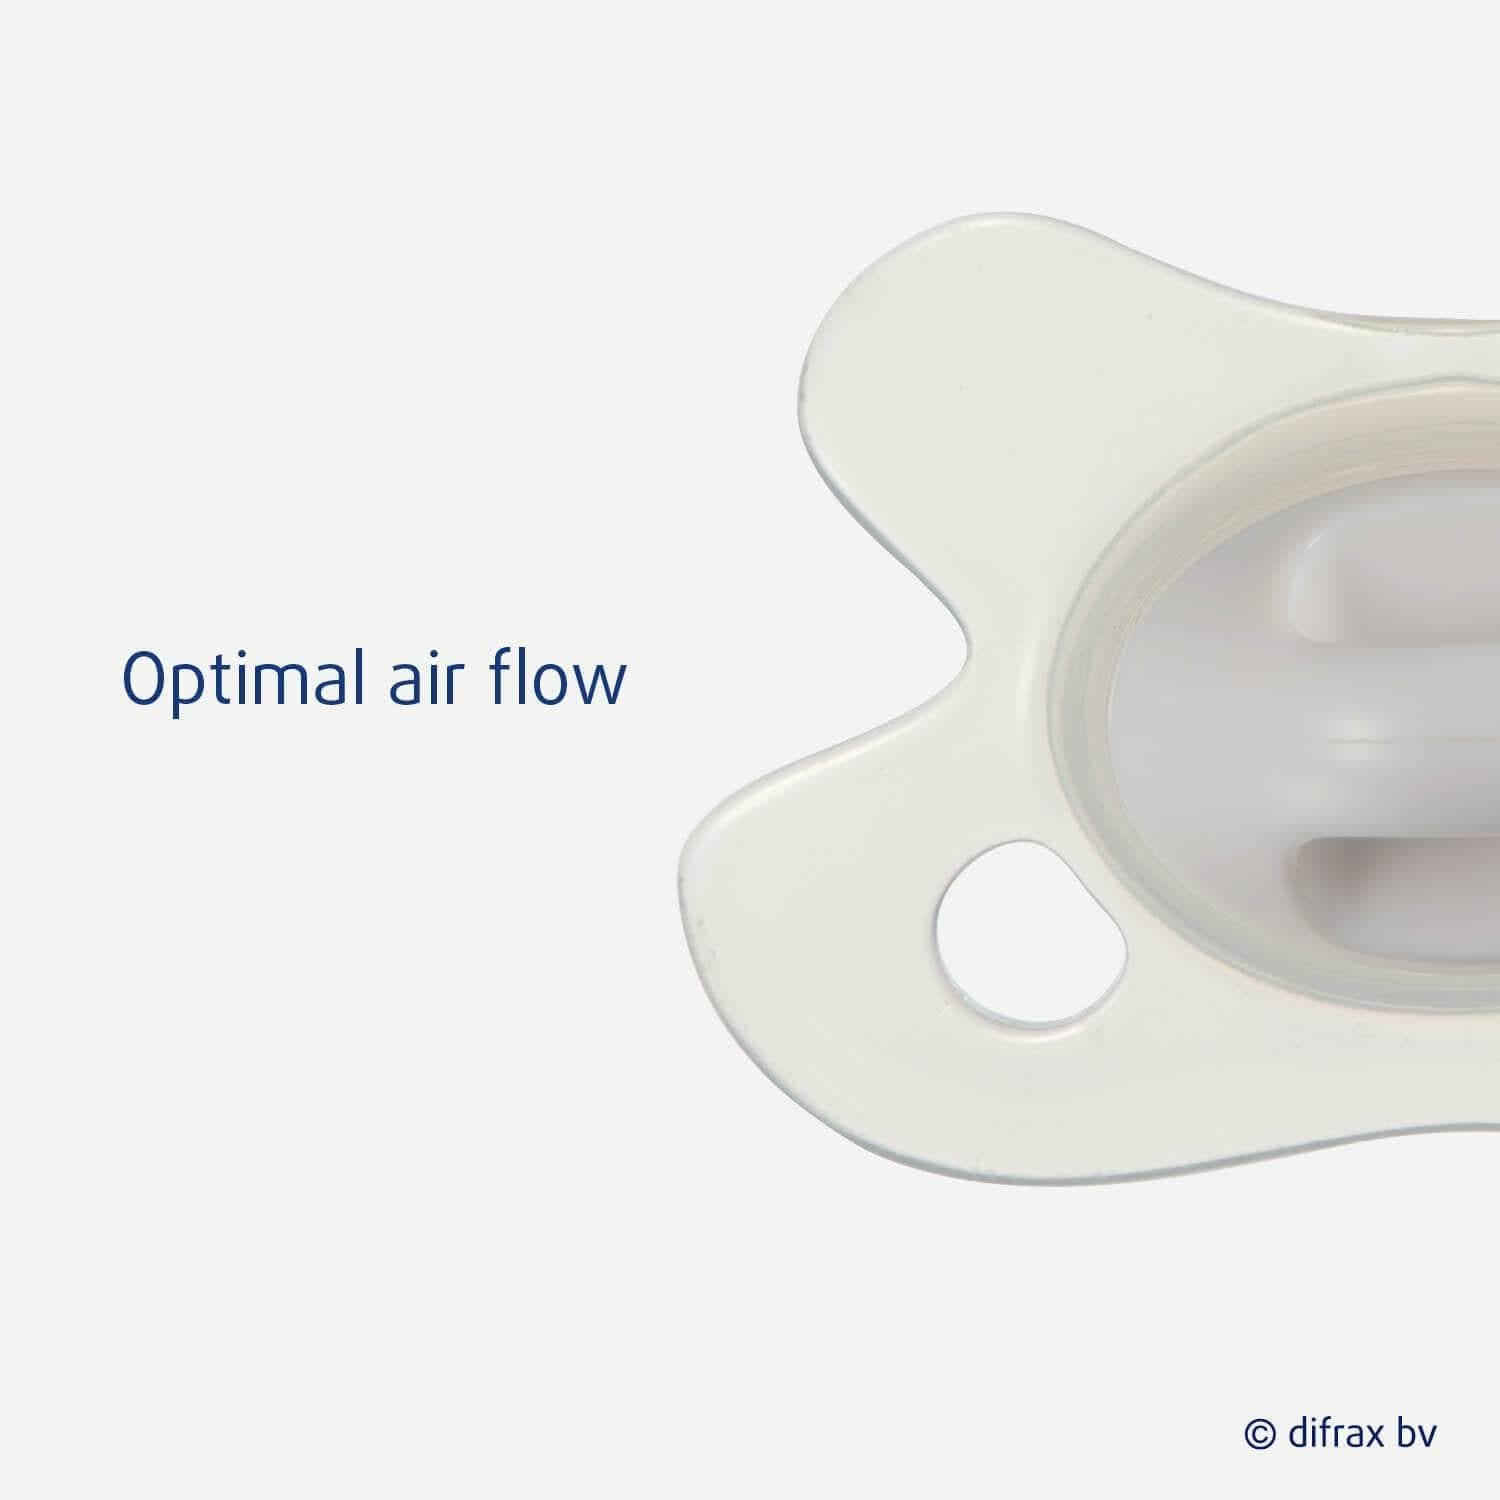 Optimal air flow